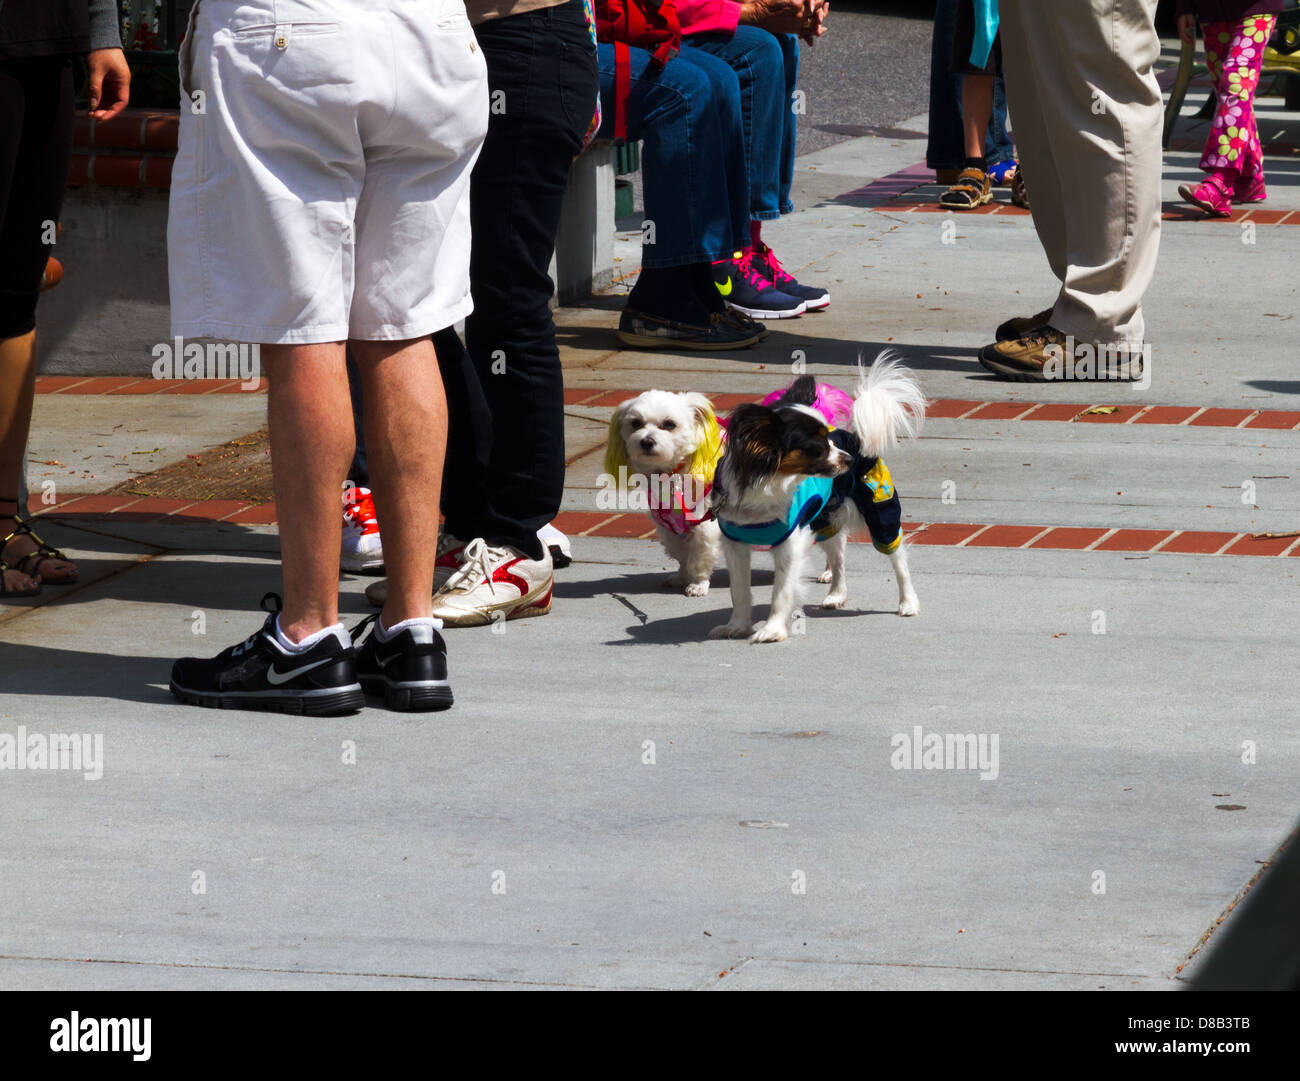 Petits chiens mignons habillés en costume sur un trottoir avec un groupe de personnes. Banque D'Images